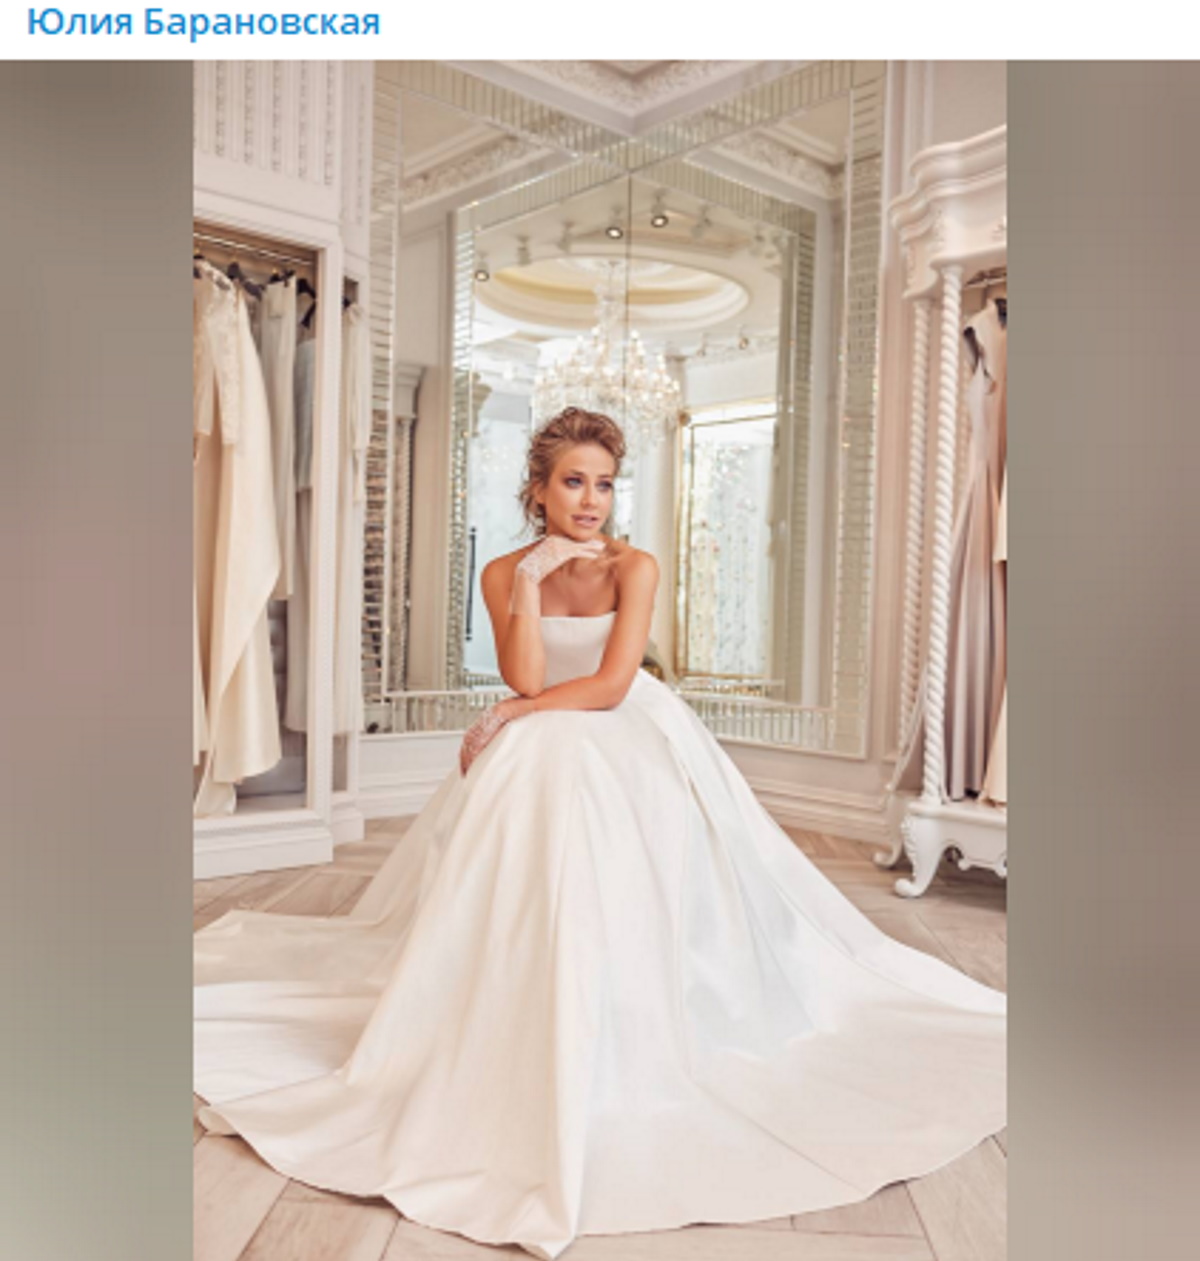 Представшая в роскошном белом платье Барановская сообщила о свадьбе: «Пока гости празднуют»